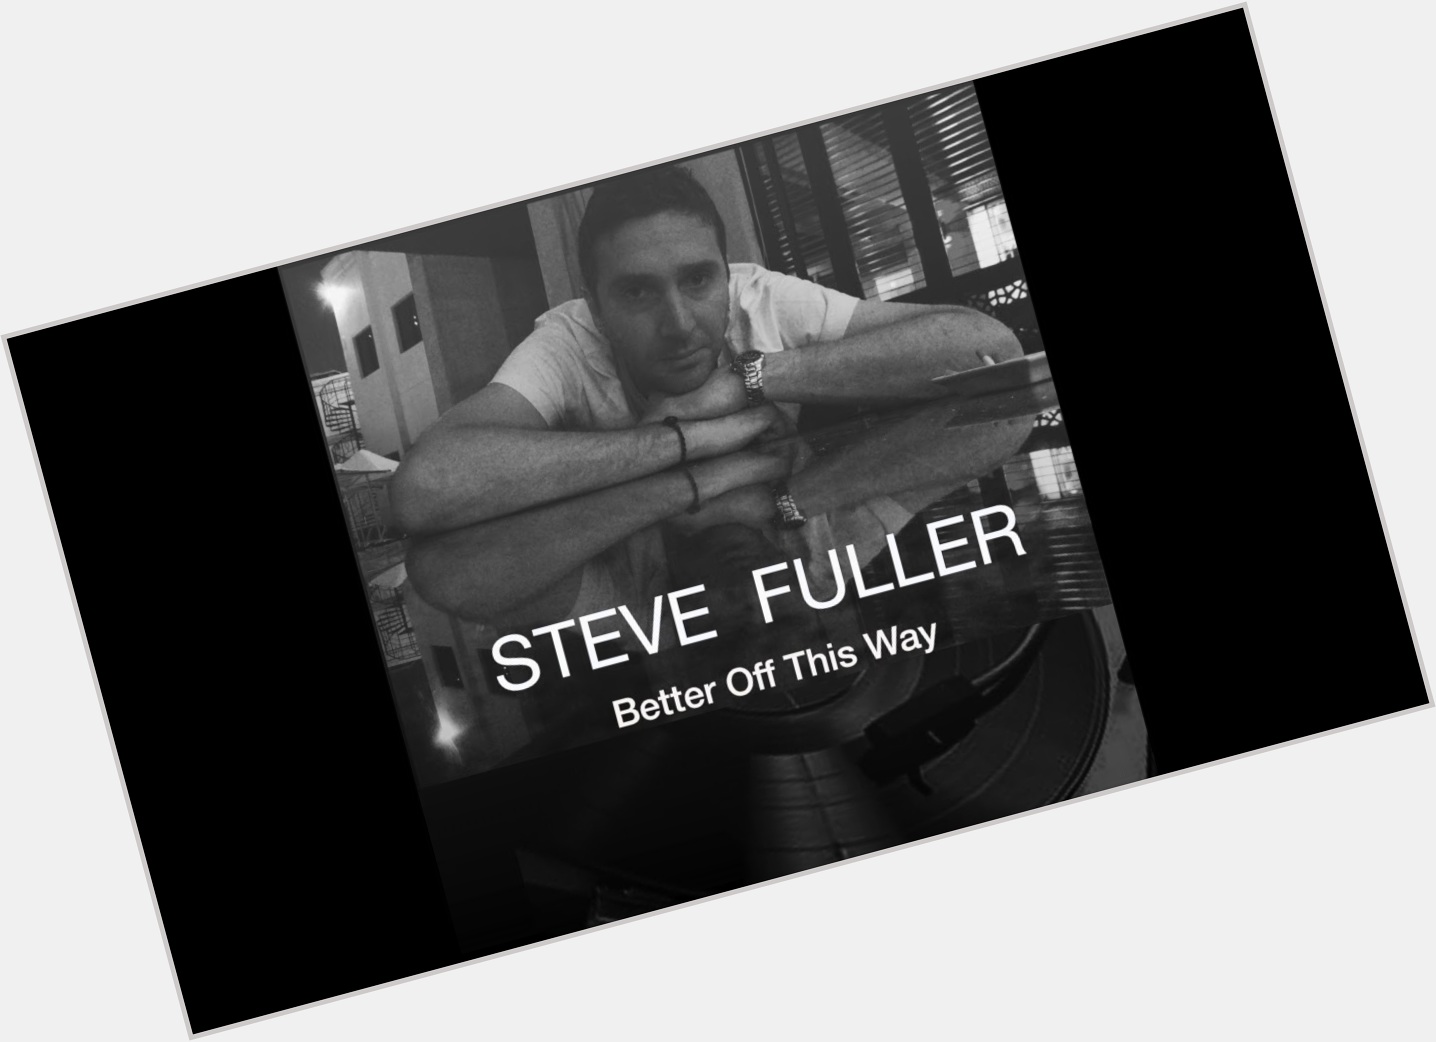 <a href="/hot-men/steve-fuller/where-dating-news-photos">Steve Fuller</a>  